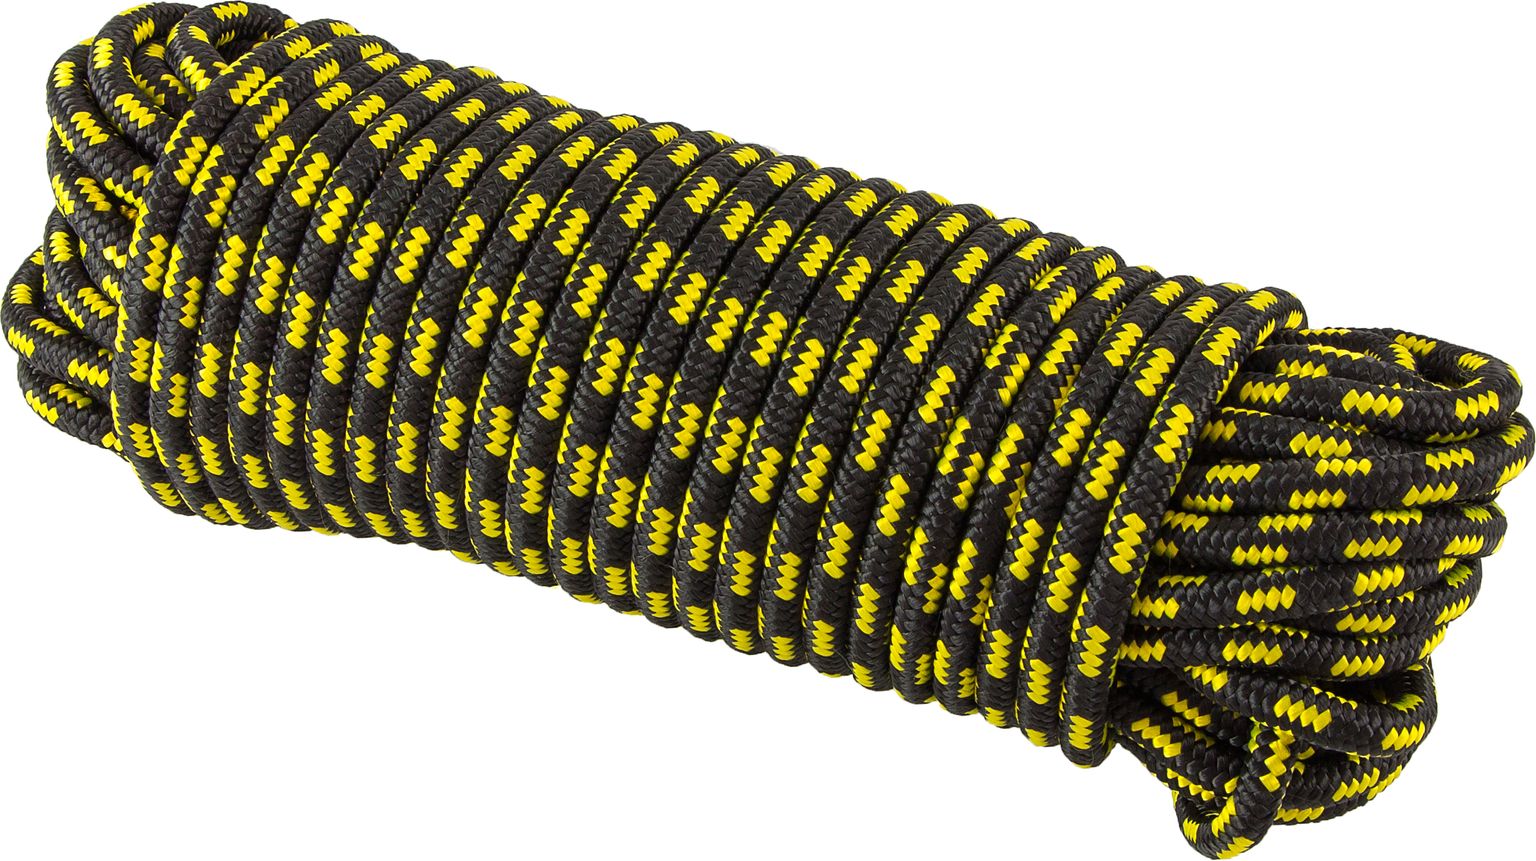 Шнур полипропиленовый плетеный d 10 мм, L 30 м SHND10L30 полипропиленовый крученый шнур каменщика стройбат